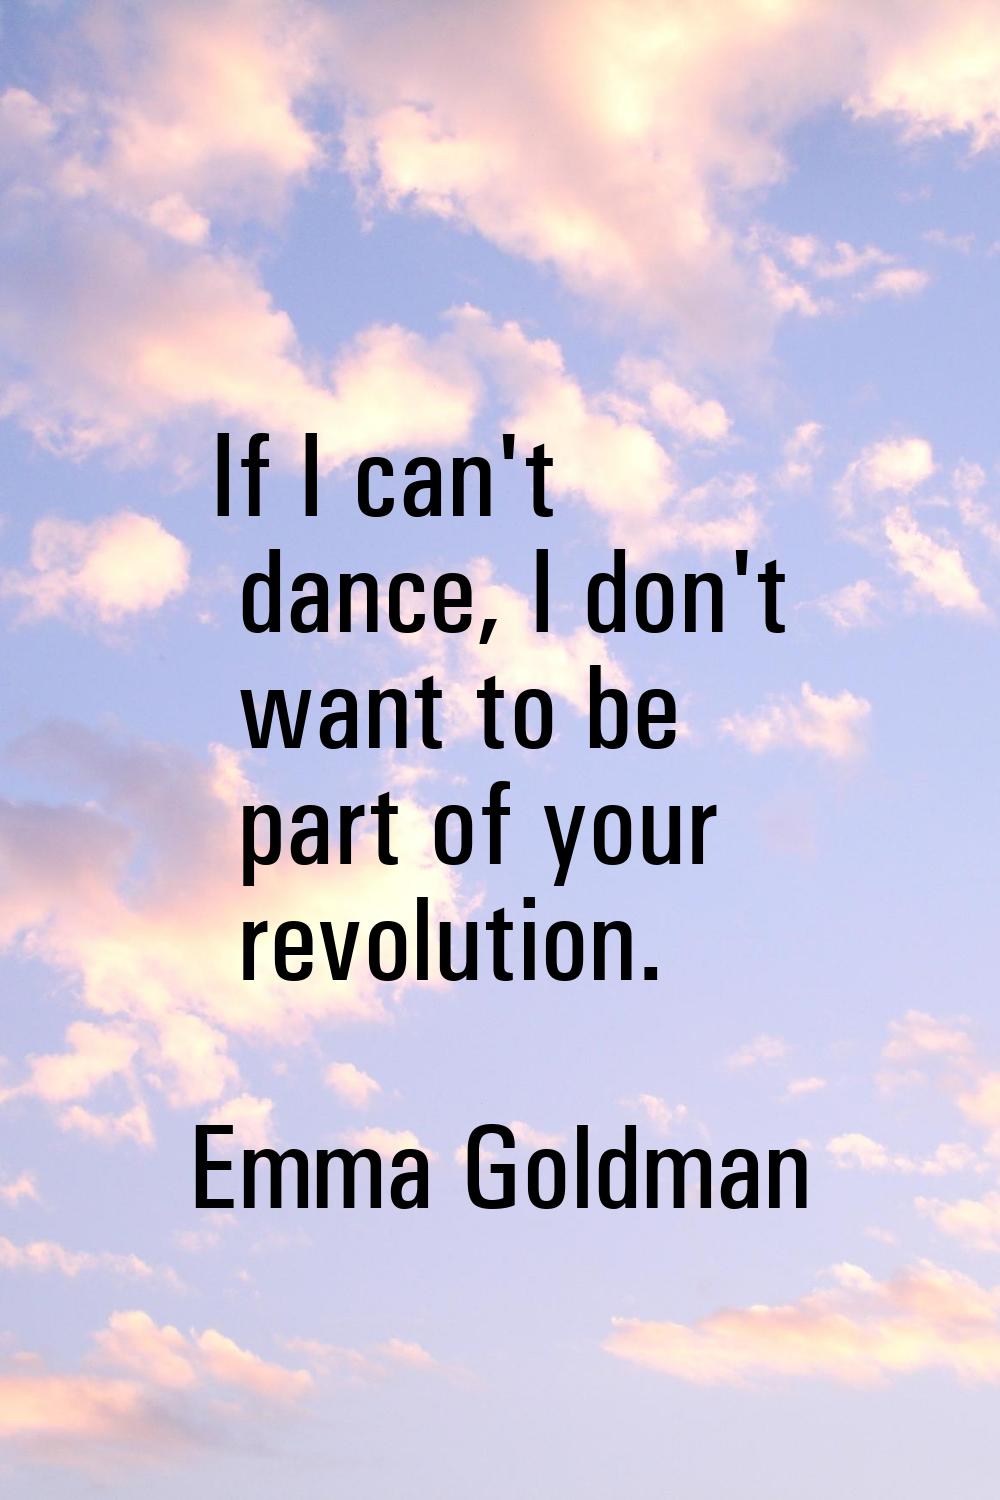 If I can't dance, I don't want to be part of your revolution.